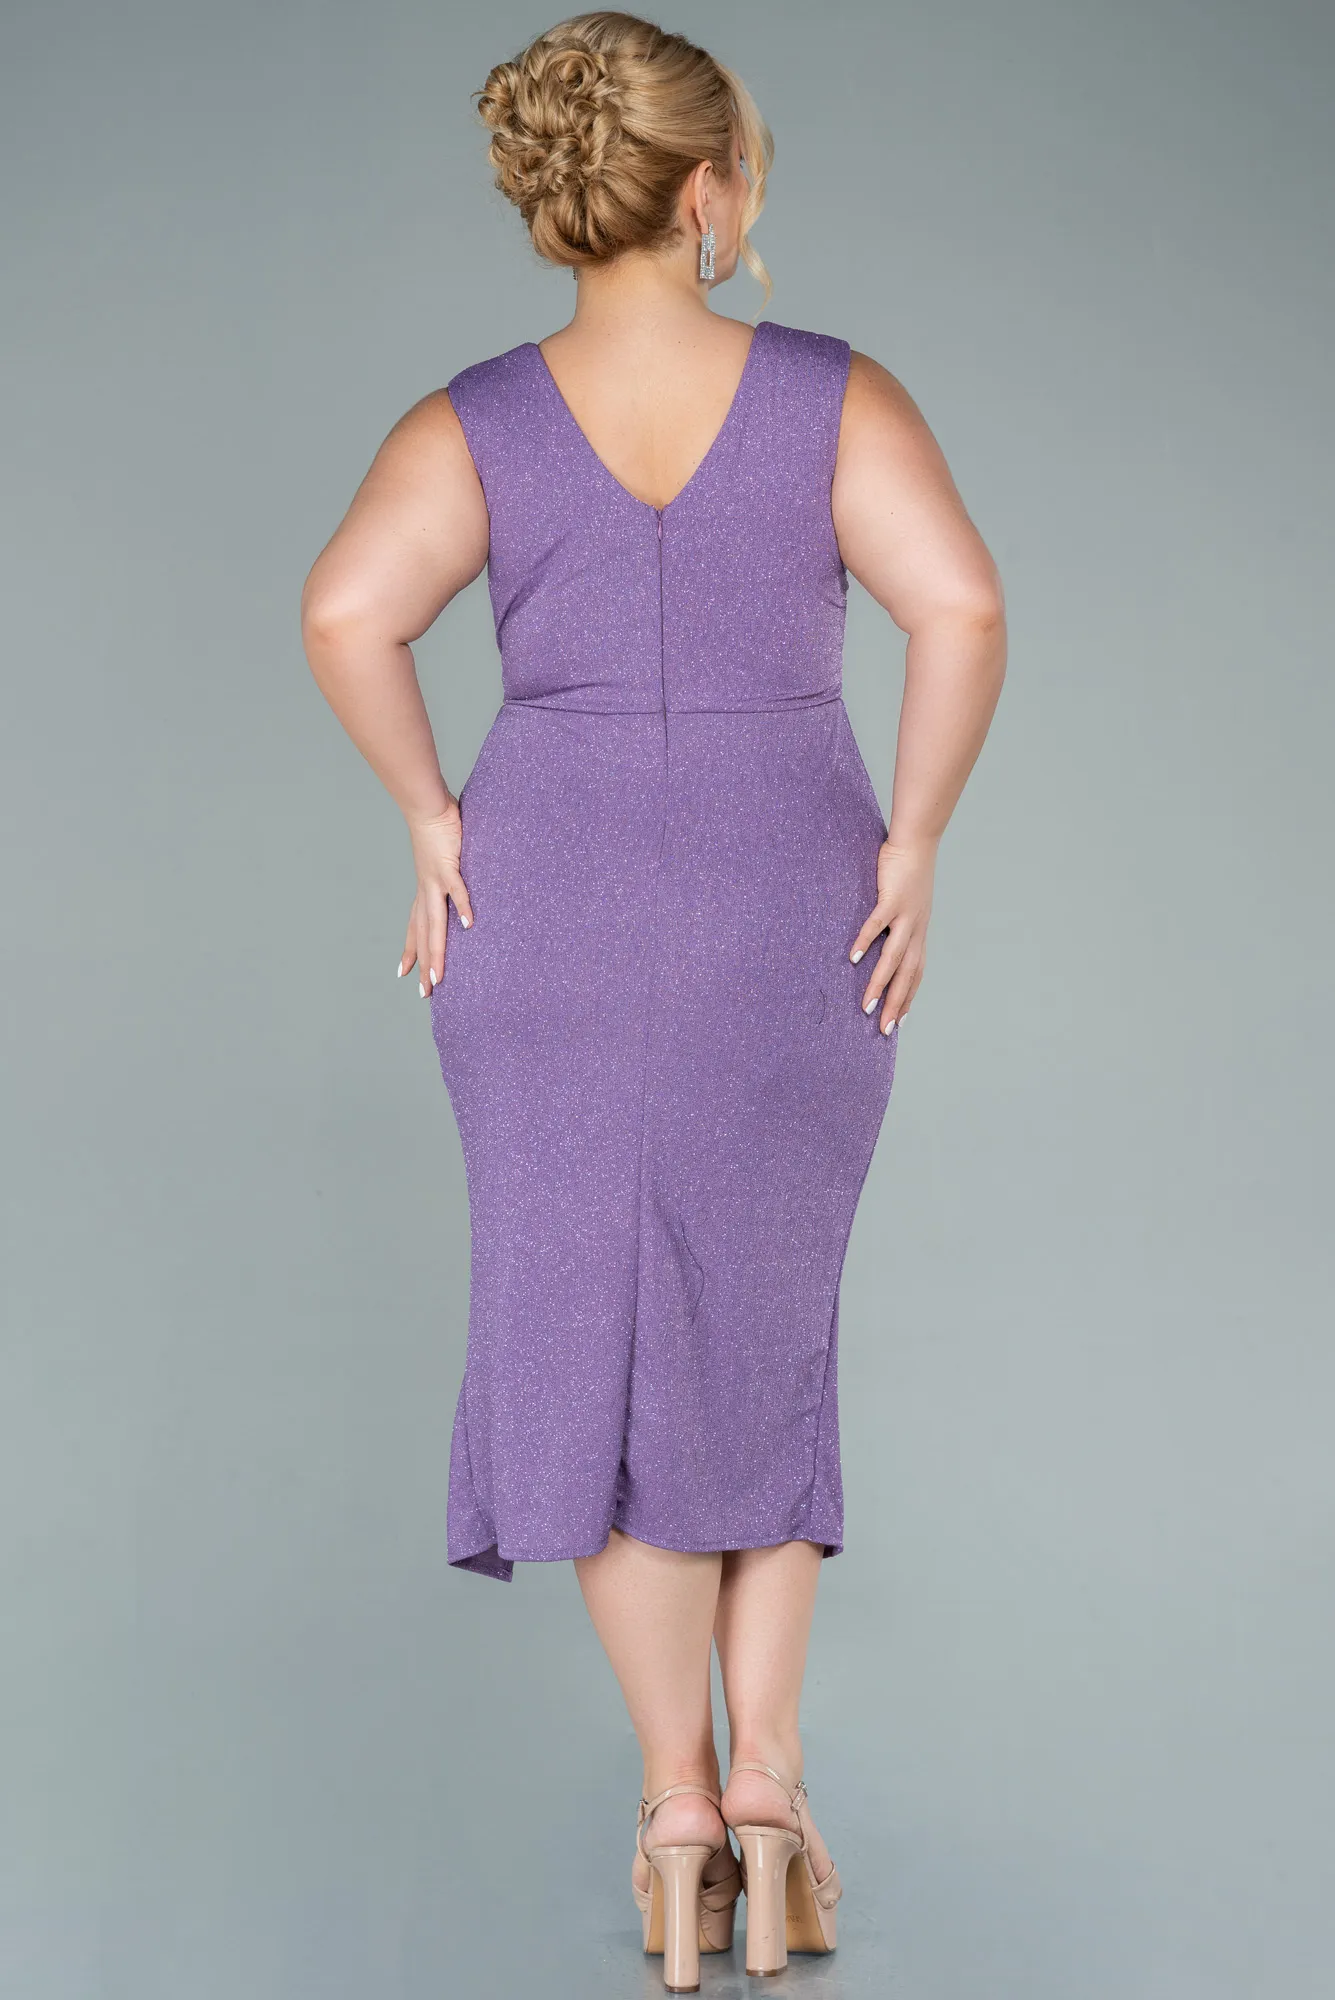 Lavender-Midi Plus Size Evening Dress ABK1492